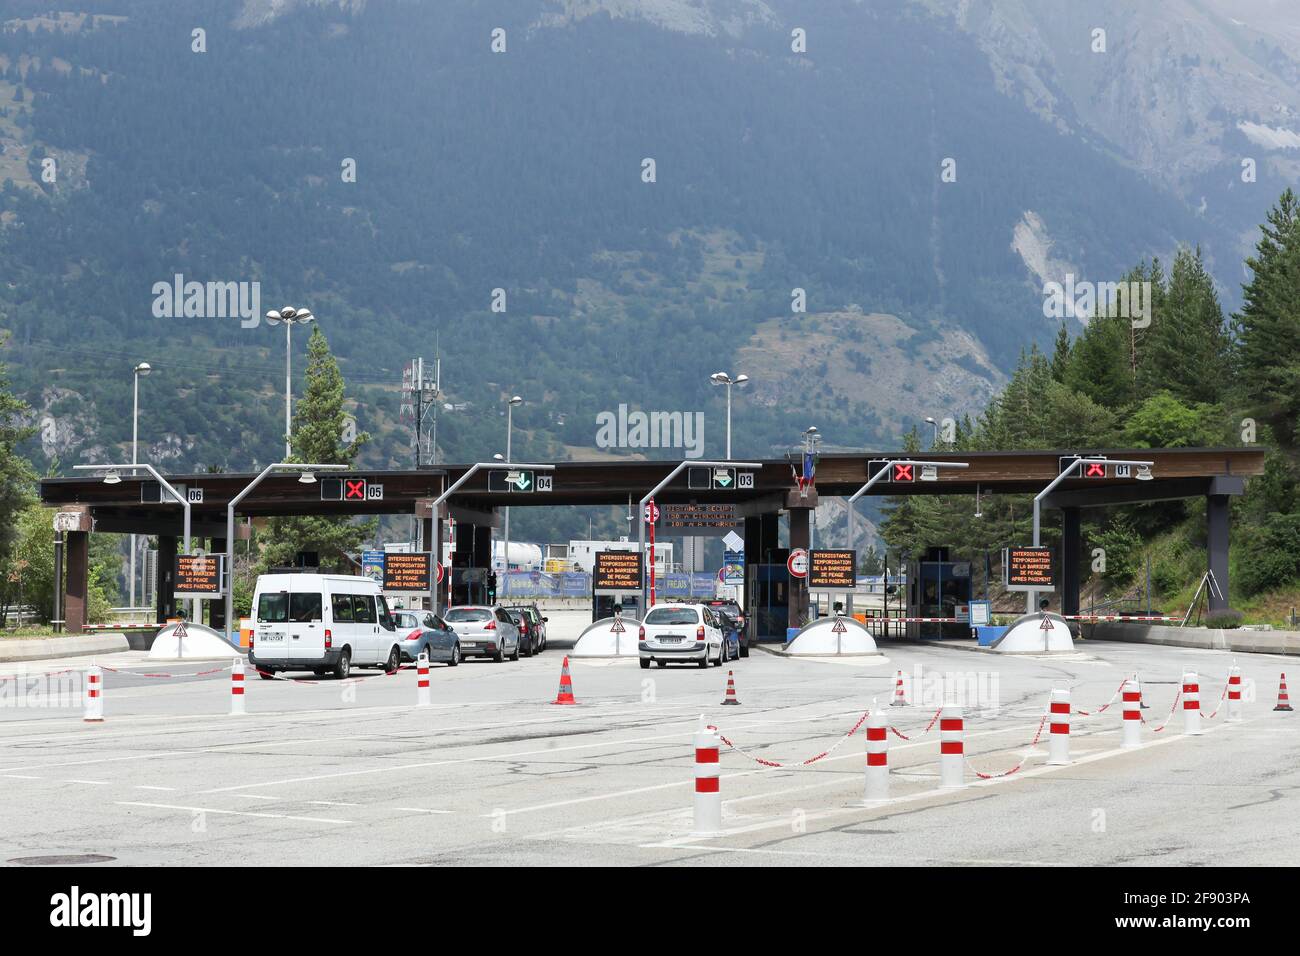 Mosanne, France - 19 juillet 2015 : péage autoroutier au tunnel de fréjus en France. Le tunnel routier de Fréjus est un tunnel qui relie la France et l'Italie Banque D'Images